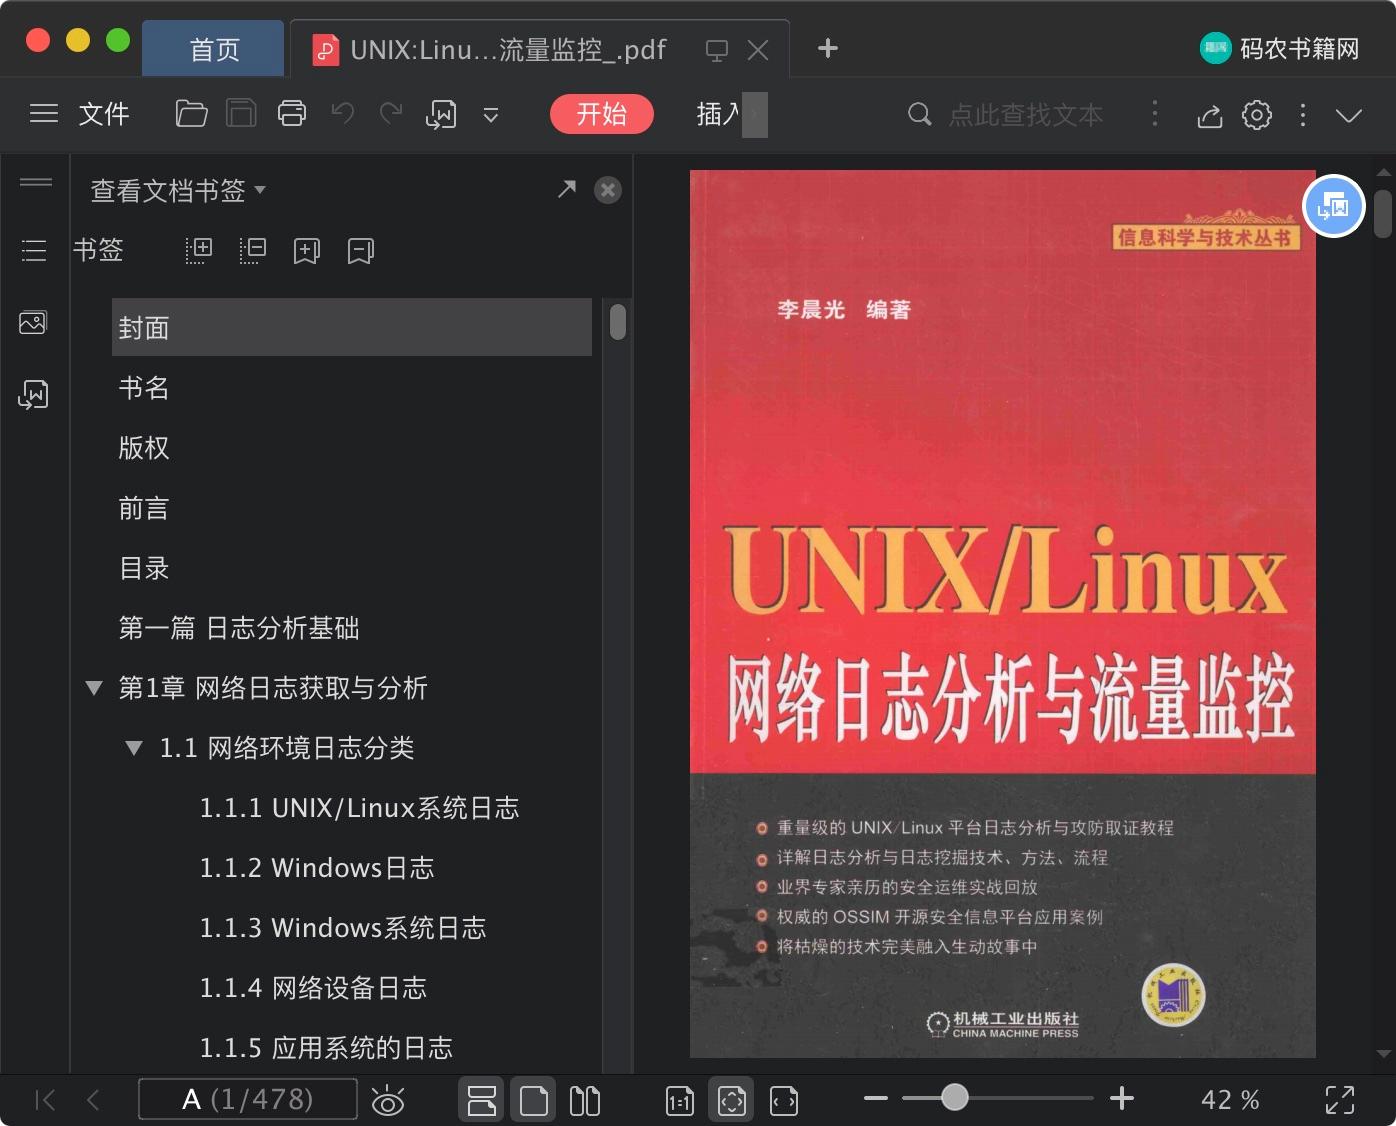 UNIX Linux教程网络日志分析与流量监控pdf电子书籍下载百度云